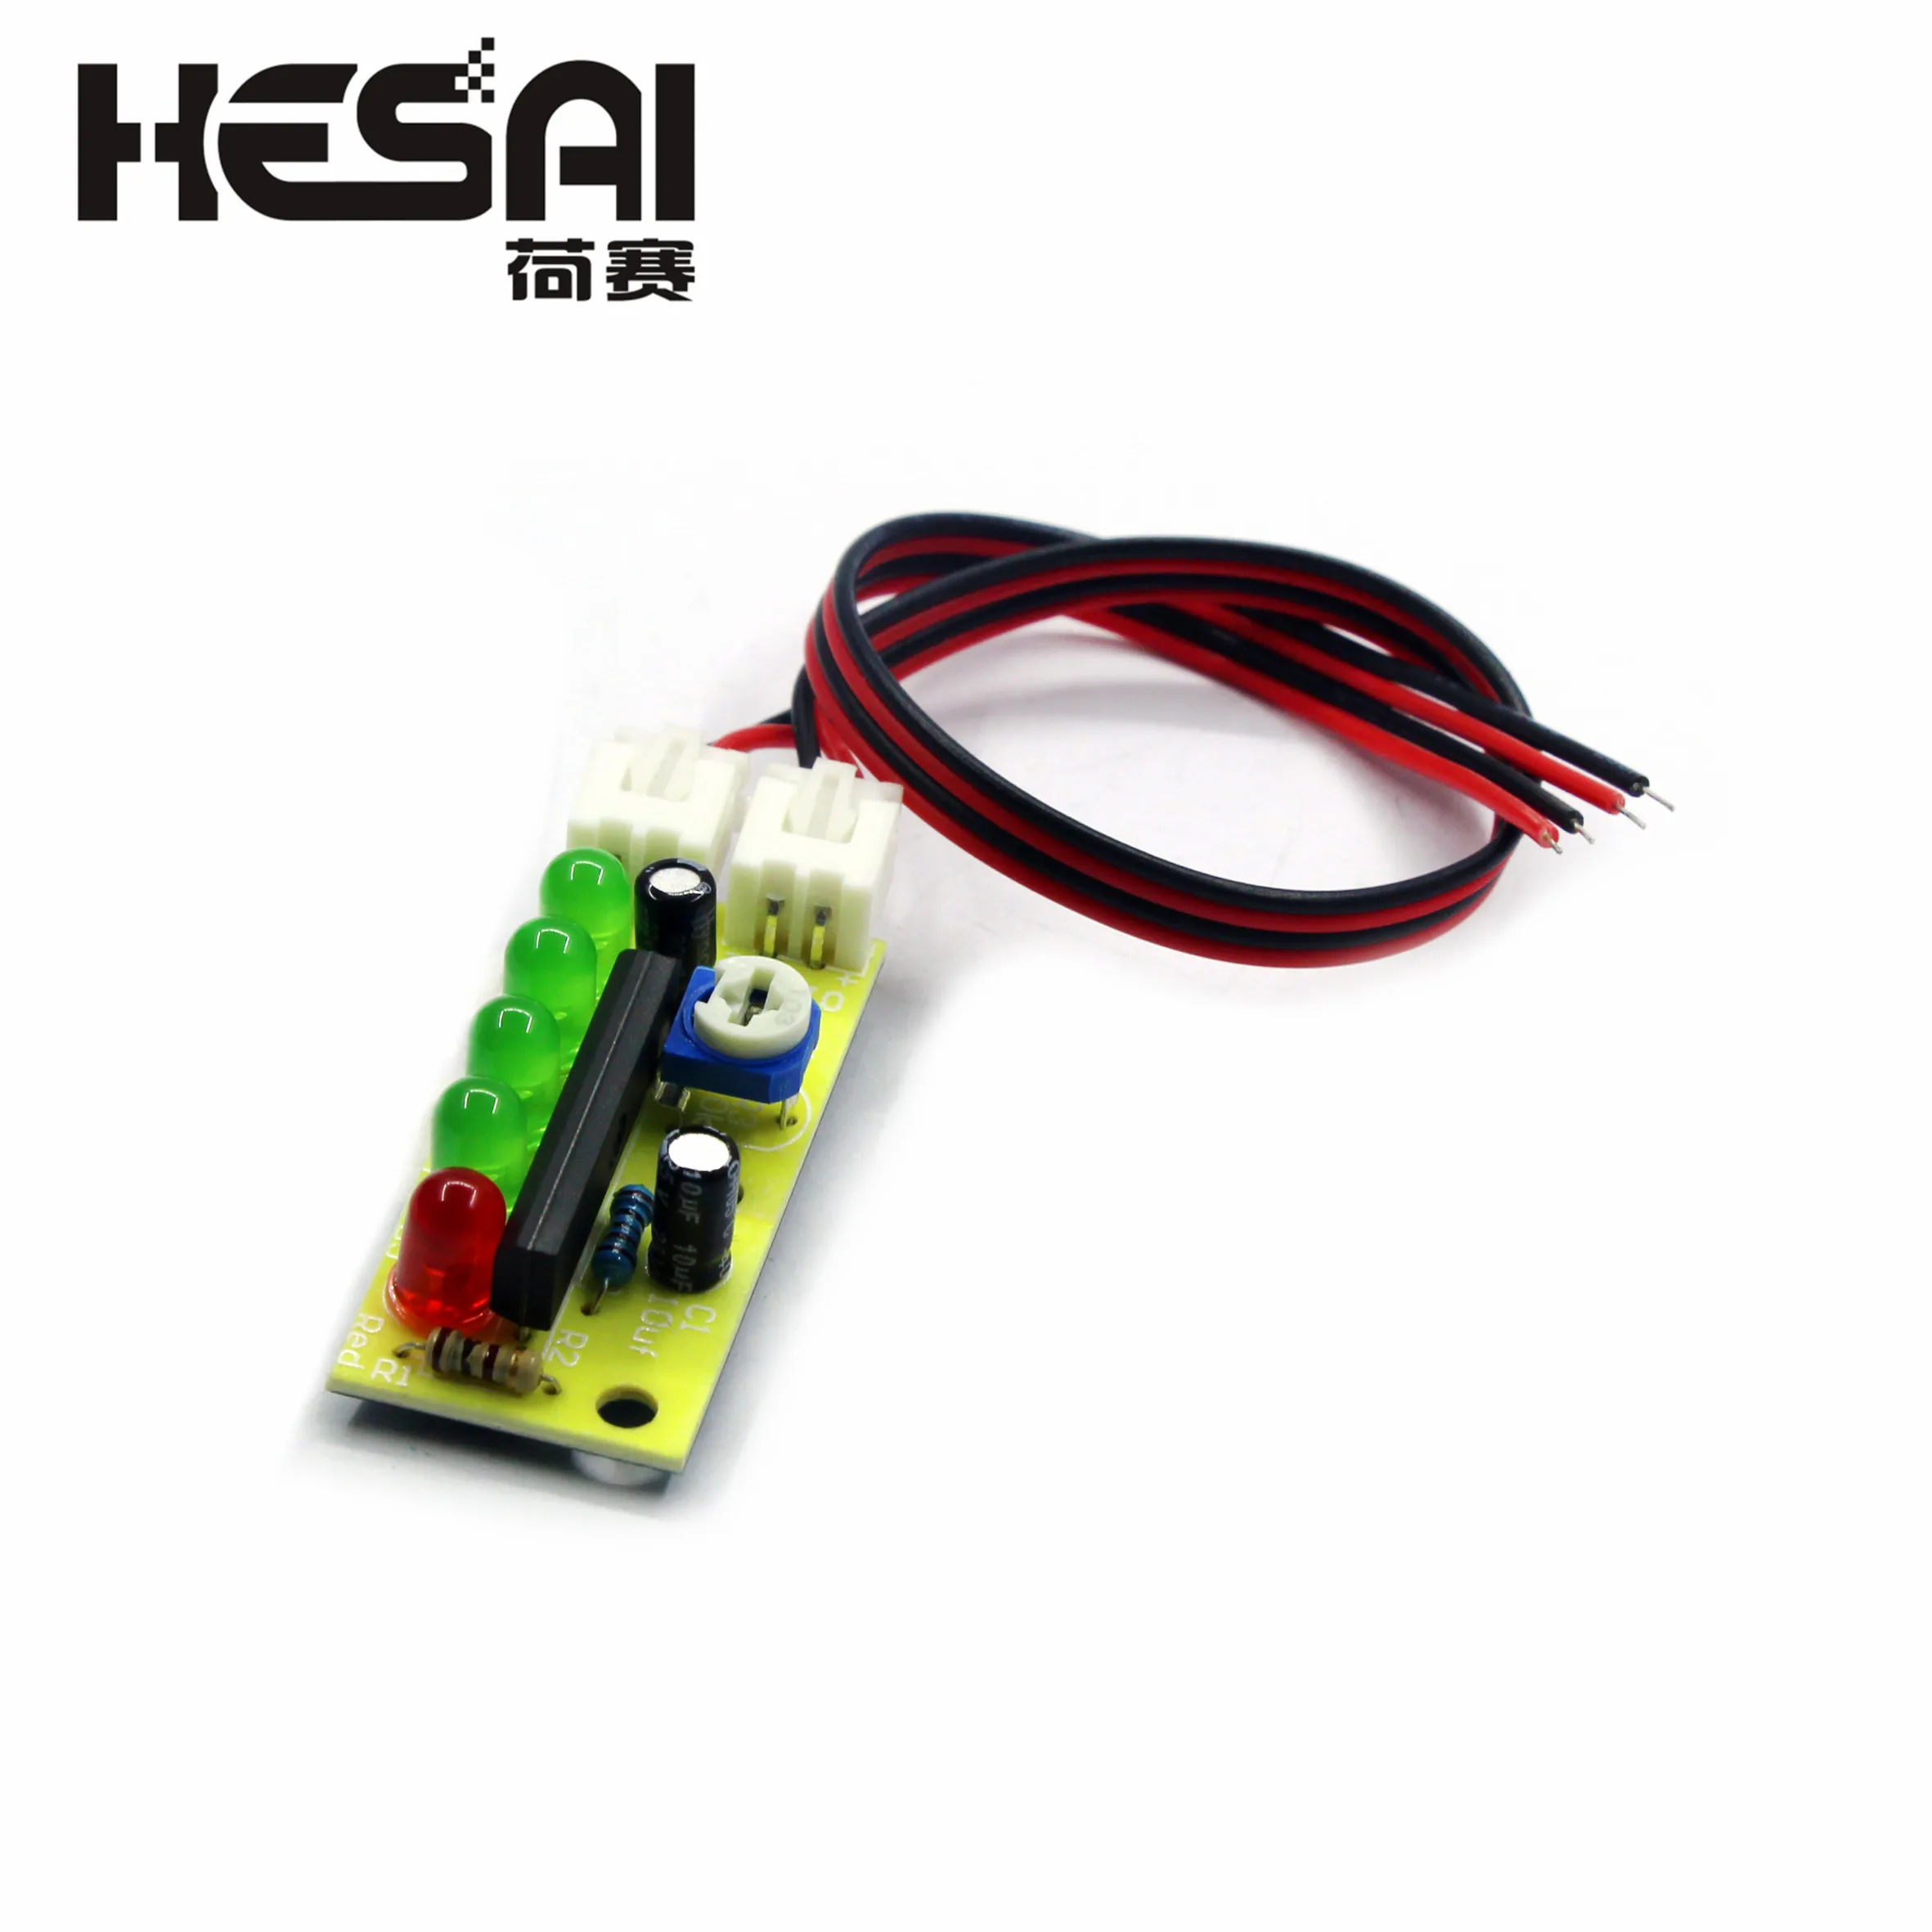 Электронный набор KA2284 для самостоятельной сборки индикаторов уровня звука